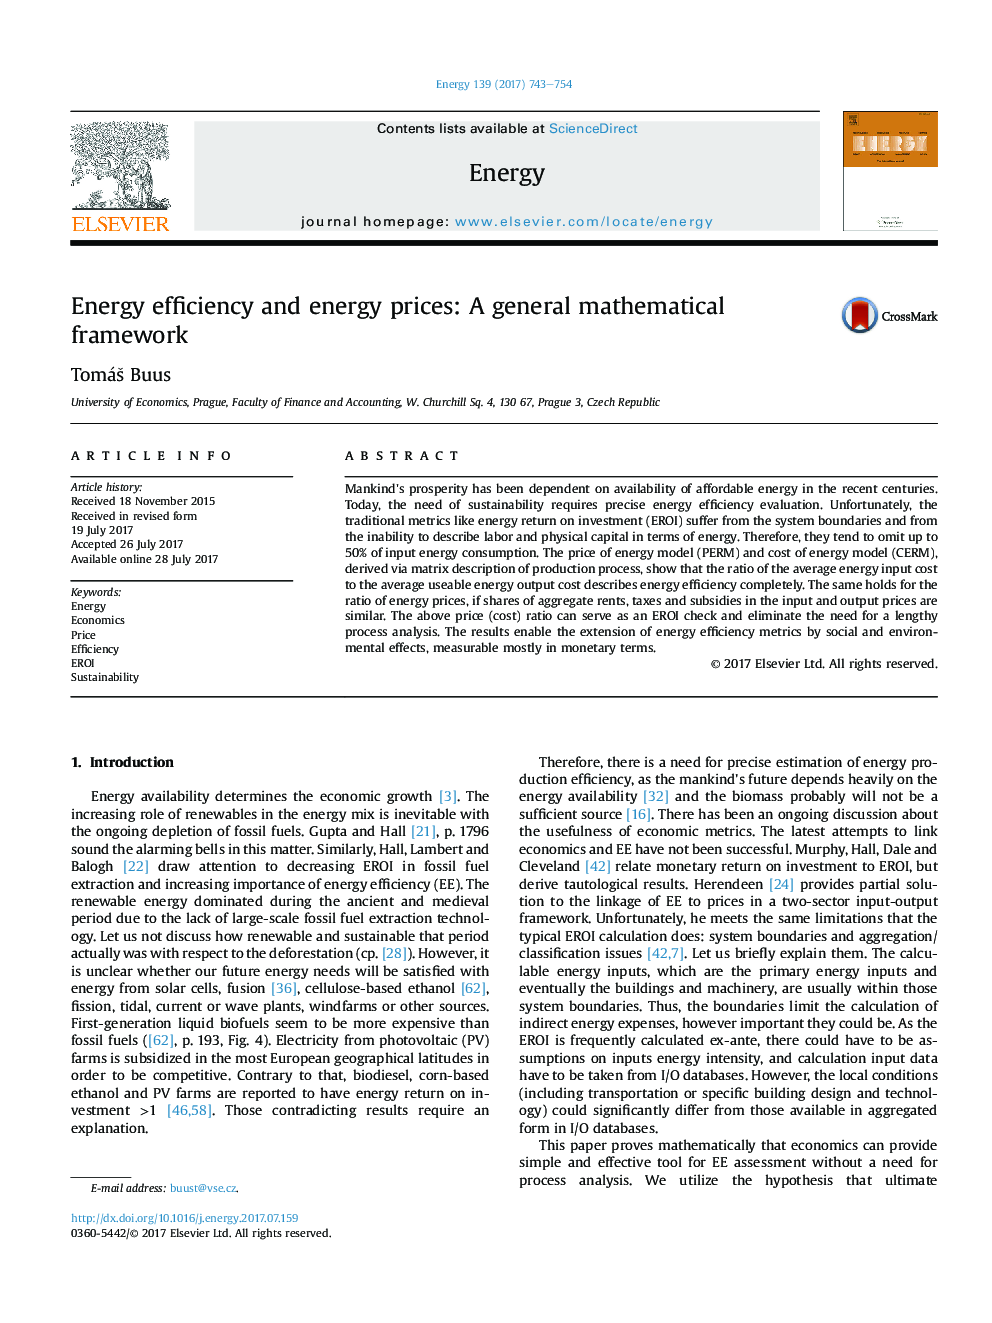 بهره وری انرژی و قیمت انرژی: یک چارچوب ریاضی عمومی 